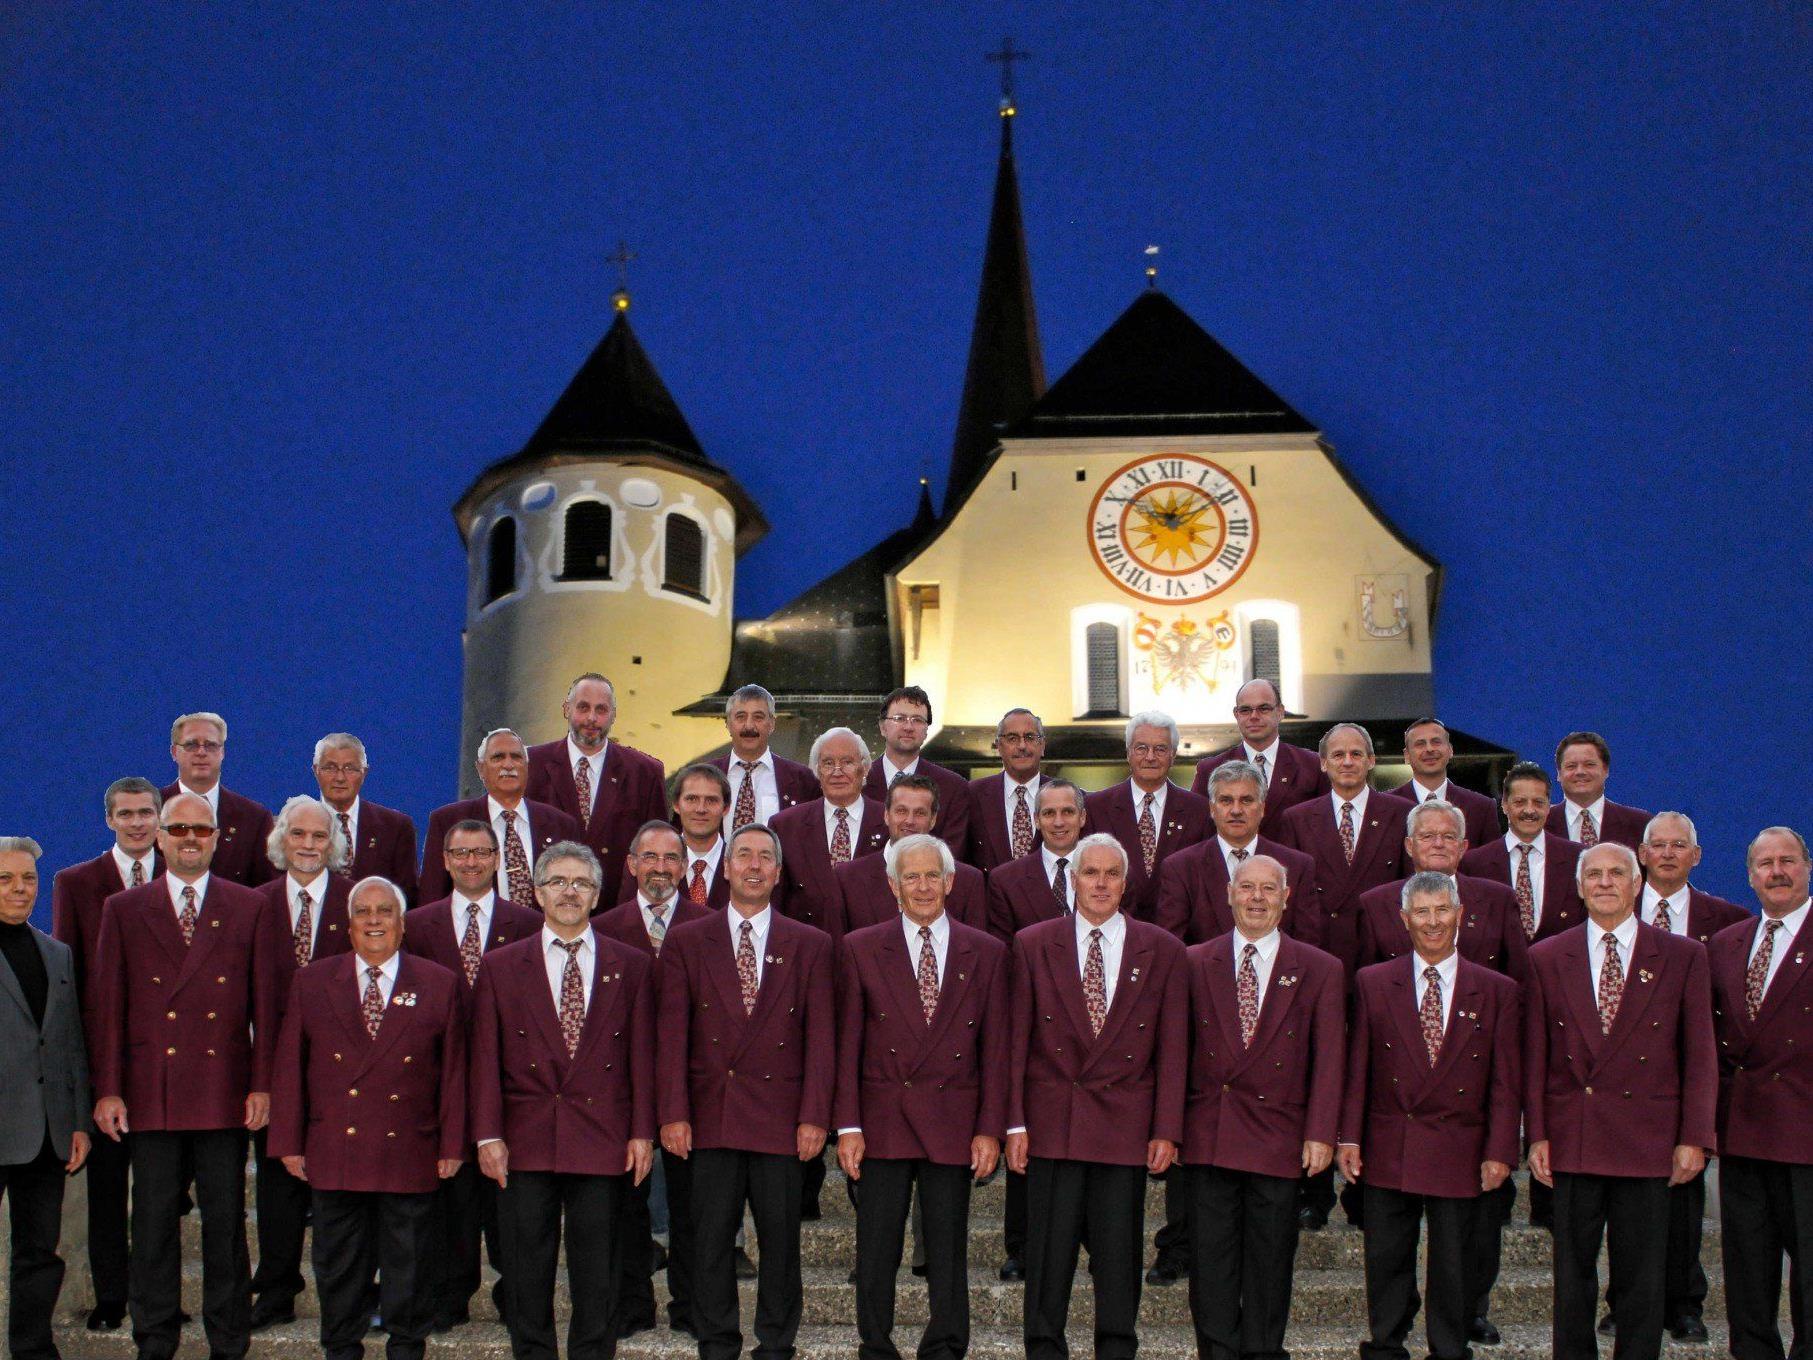 Der Männergesangsverein Liederkranz lädt zum Weihnachtskonzert in die Rankweiler Basilika.